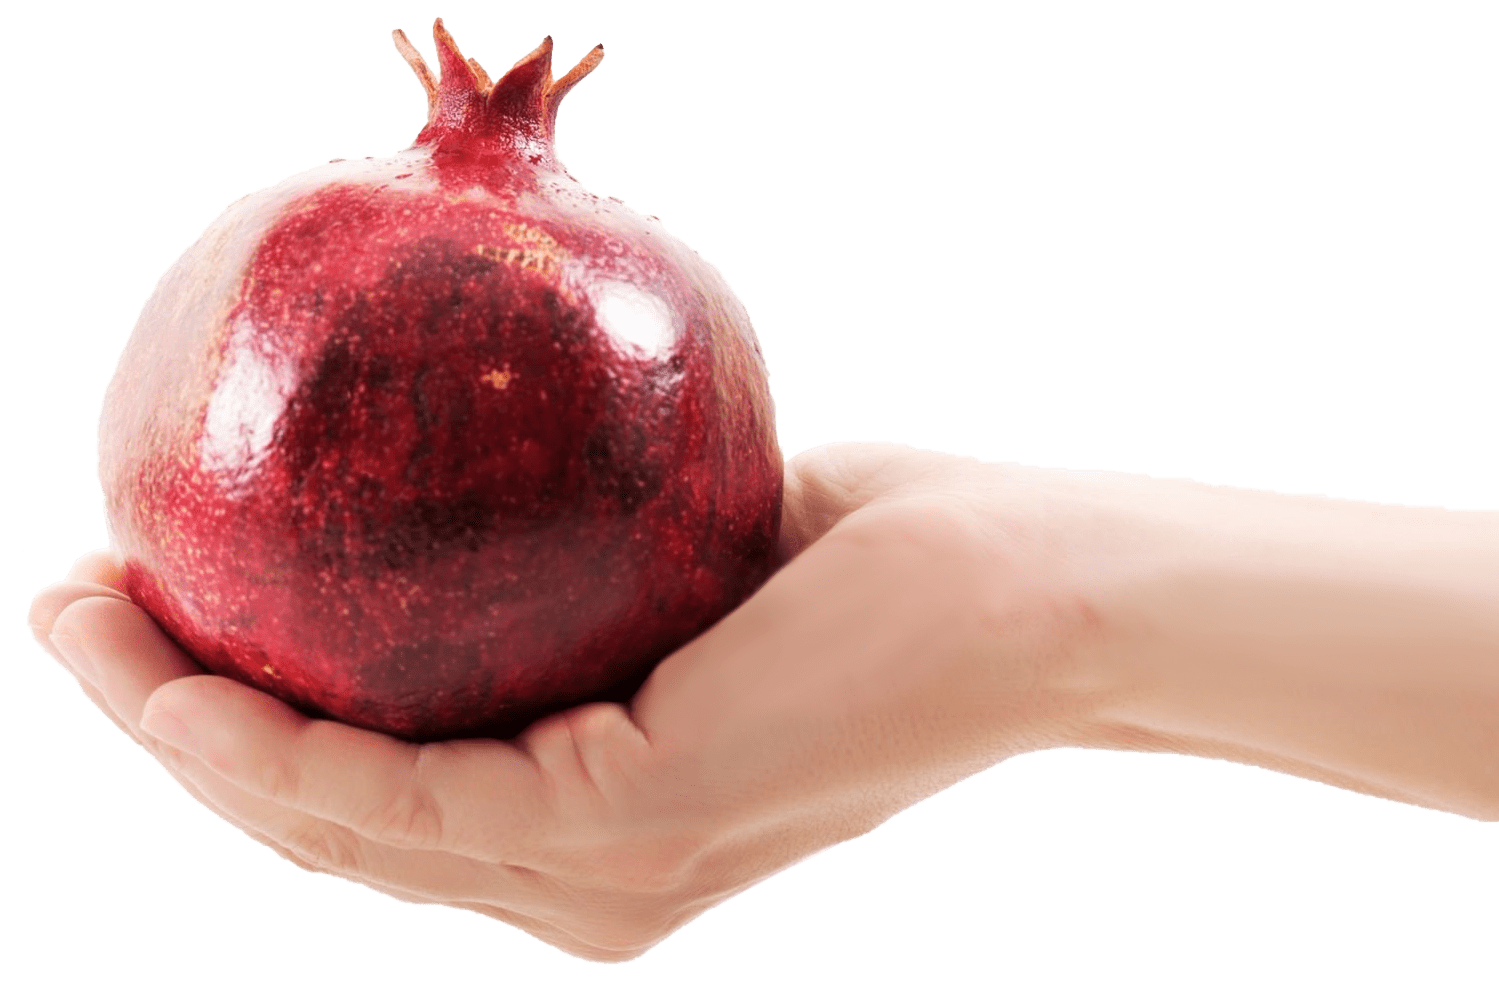 Hand holding a pomegranate (Armenian Marketing Agency)